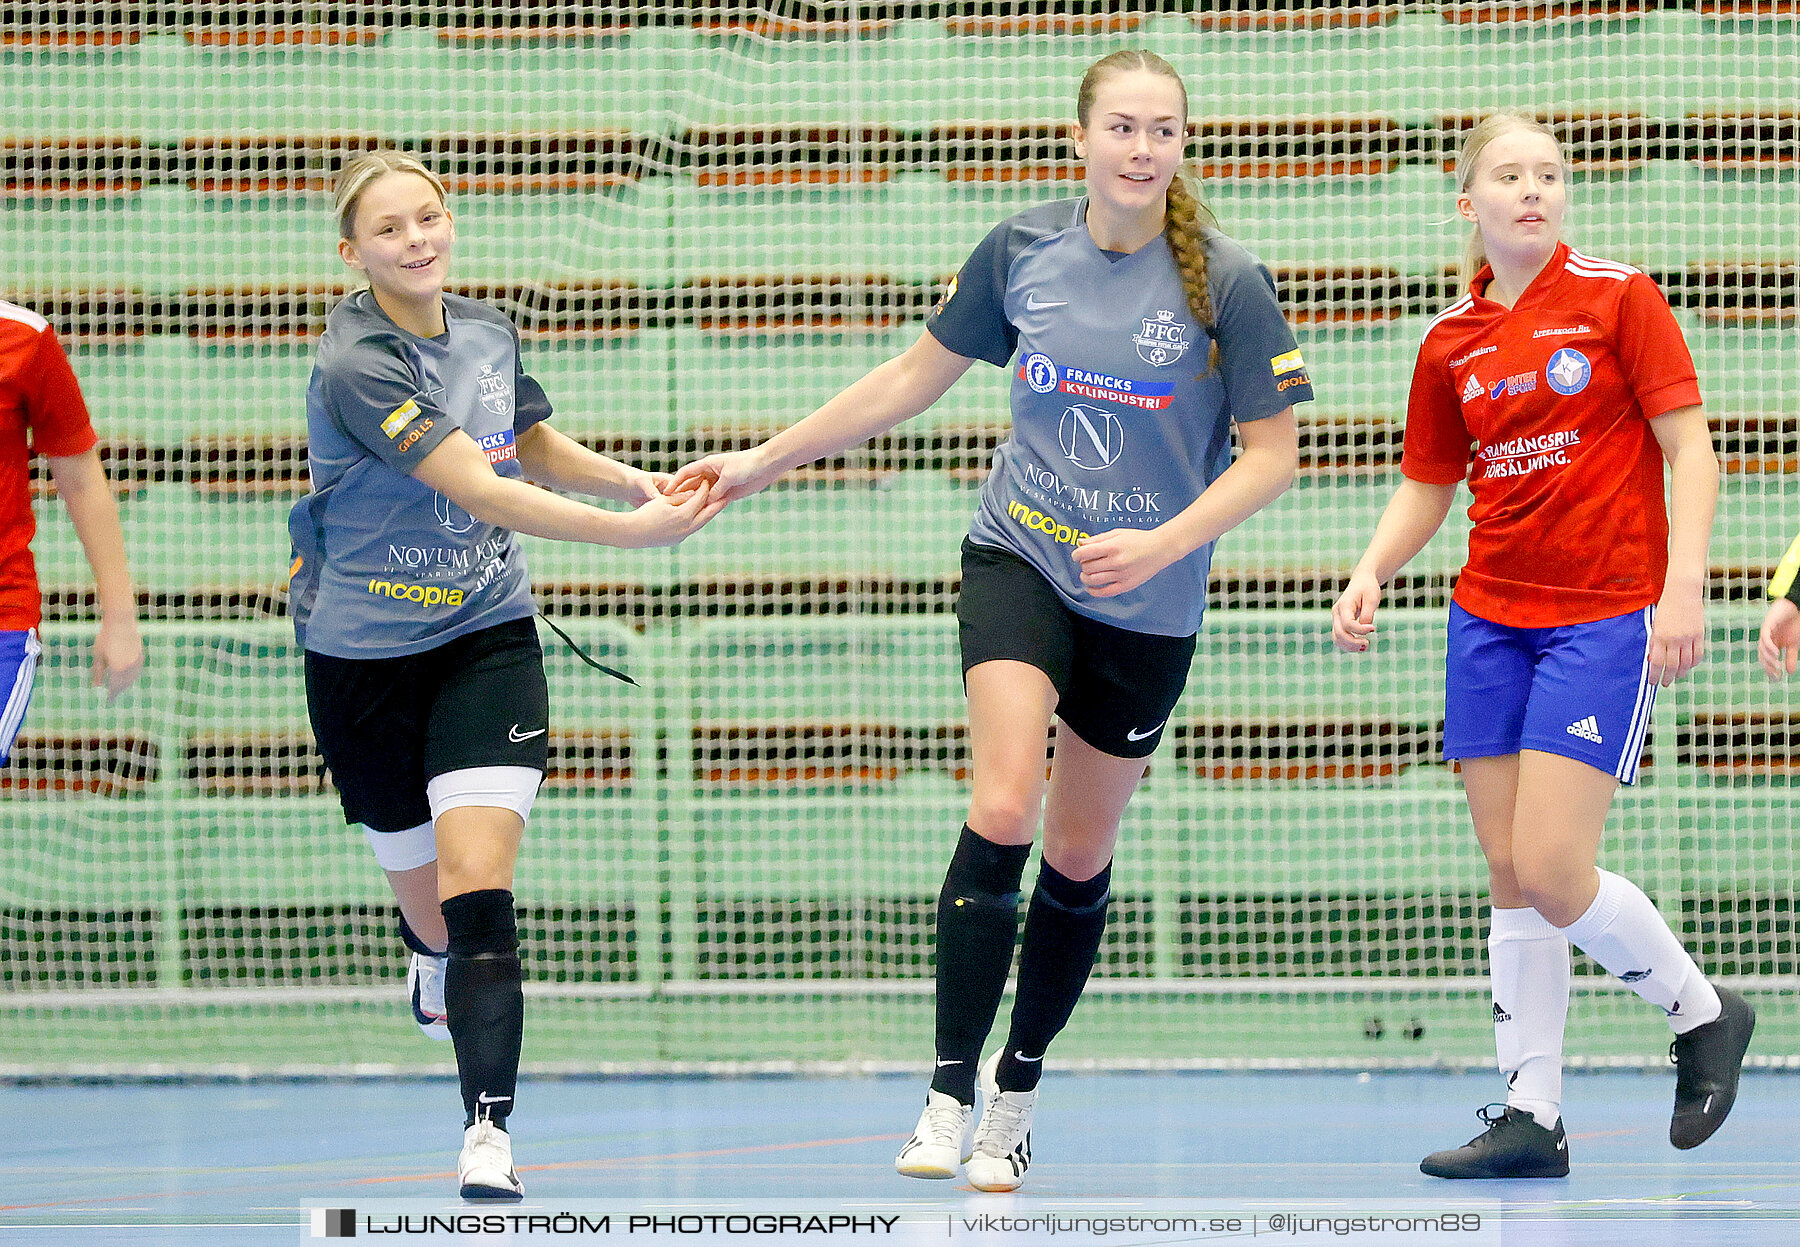 Skövde Futsalcup 2022 Damer Falköping Futsal Club-IFK Wreta Kloster 2 4-0,dam,Arena Skövde,Skövde,Sverige,Futsal,,2022,297601